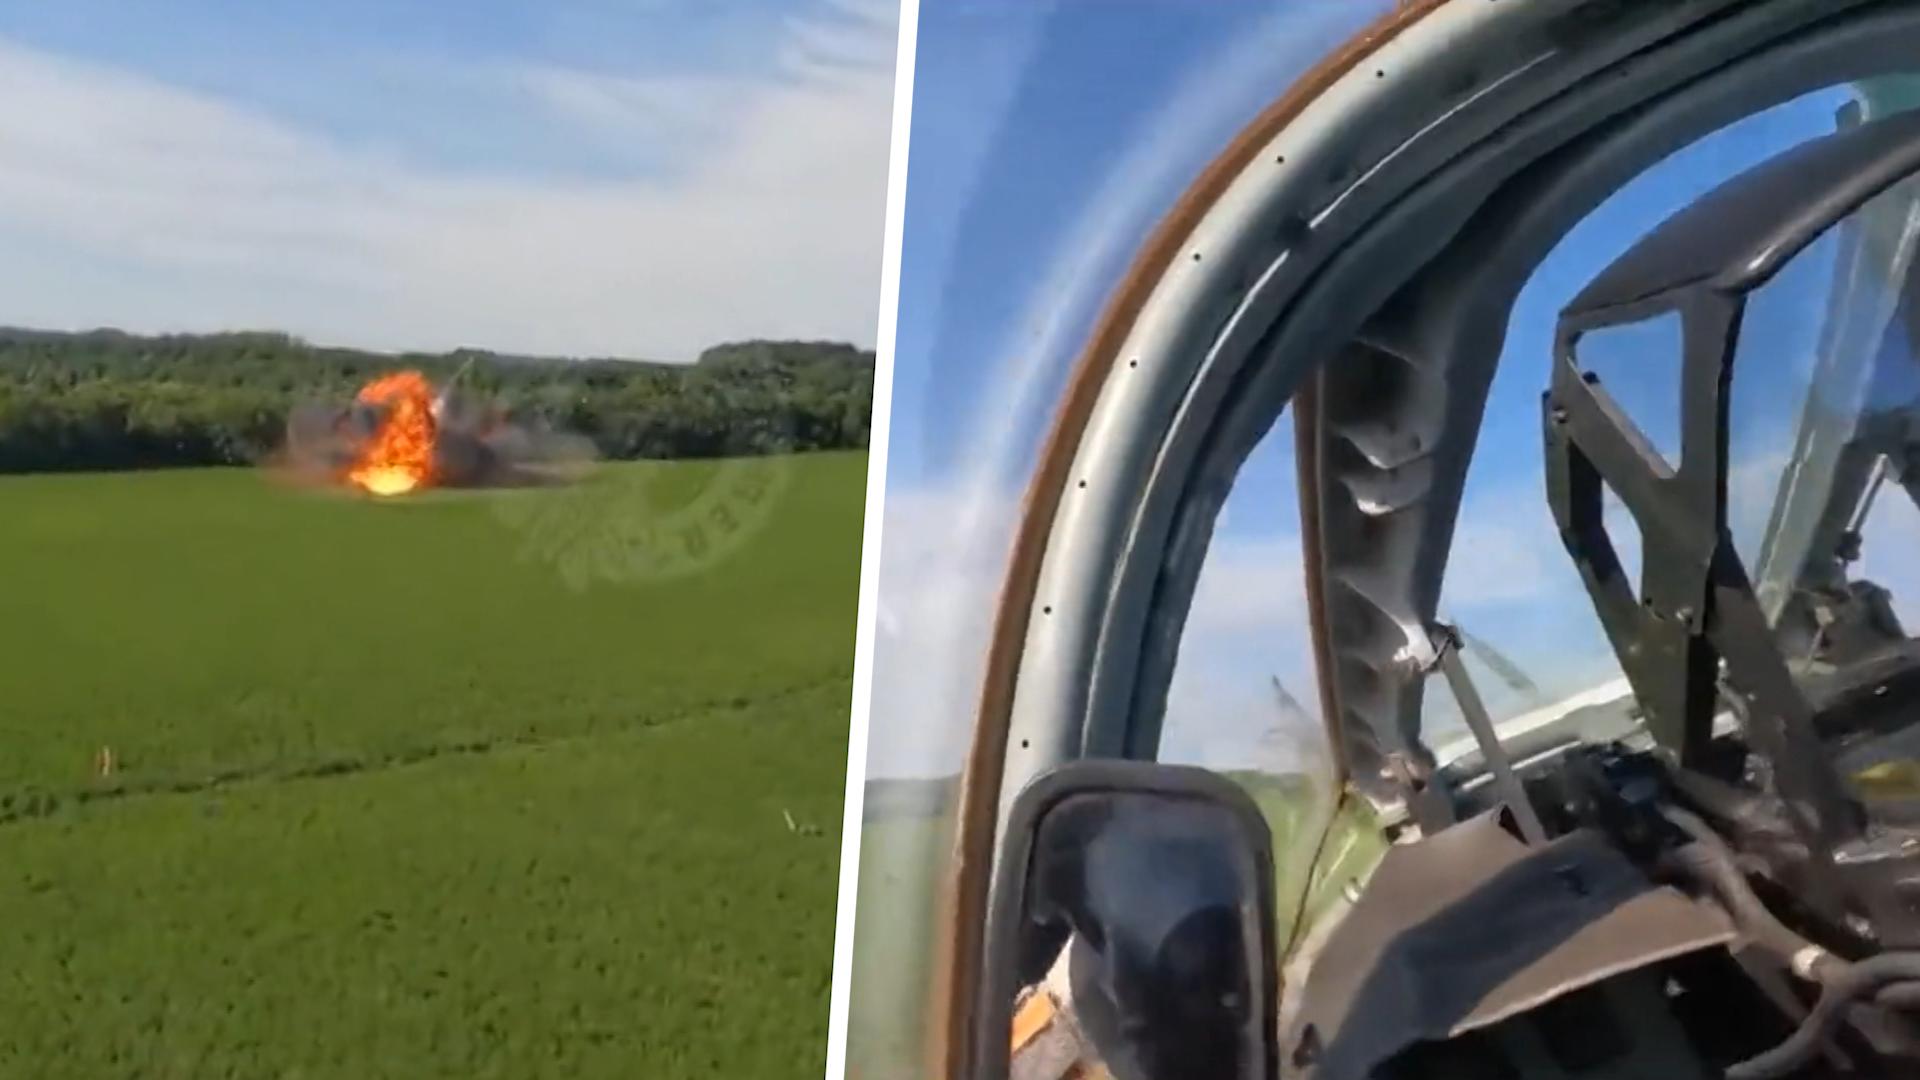 Kampfjet explodiert: Pilot rettet sich mit Fallschirm Unfall im Training